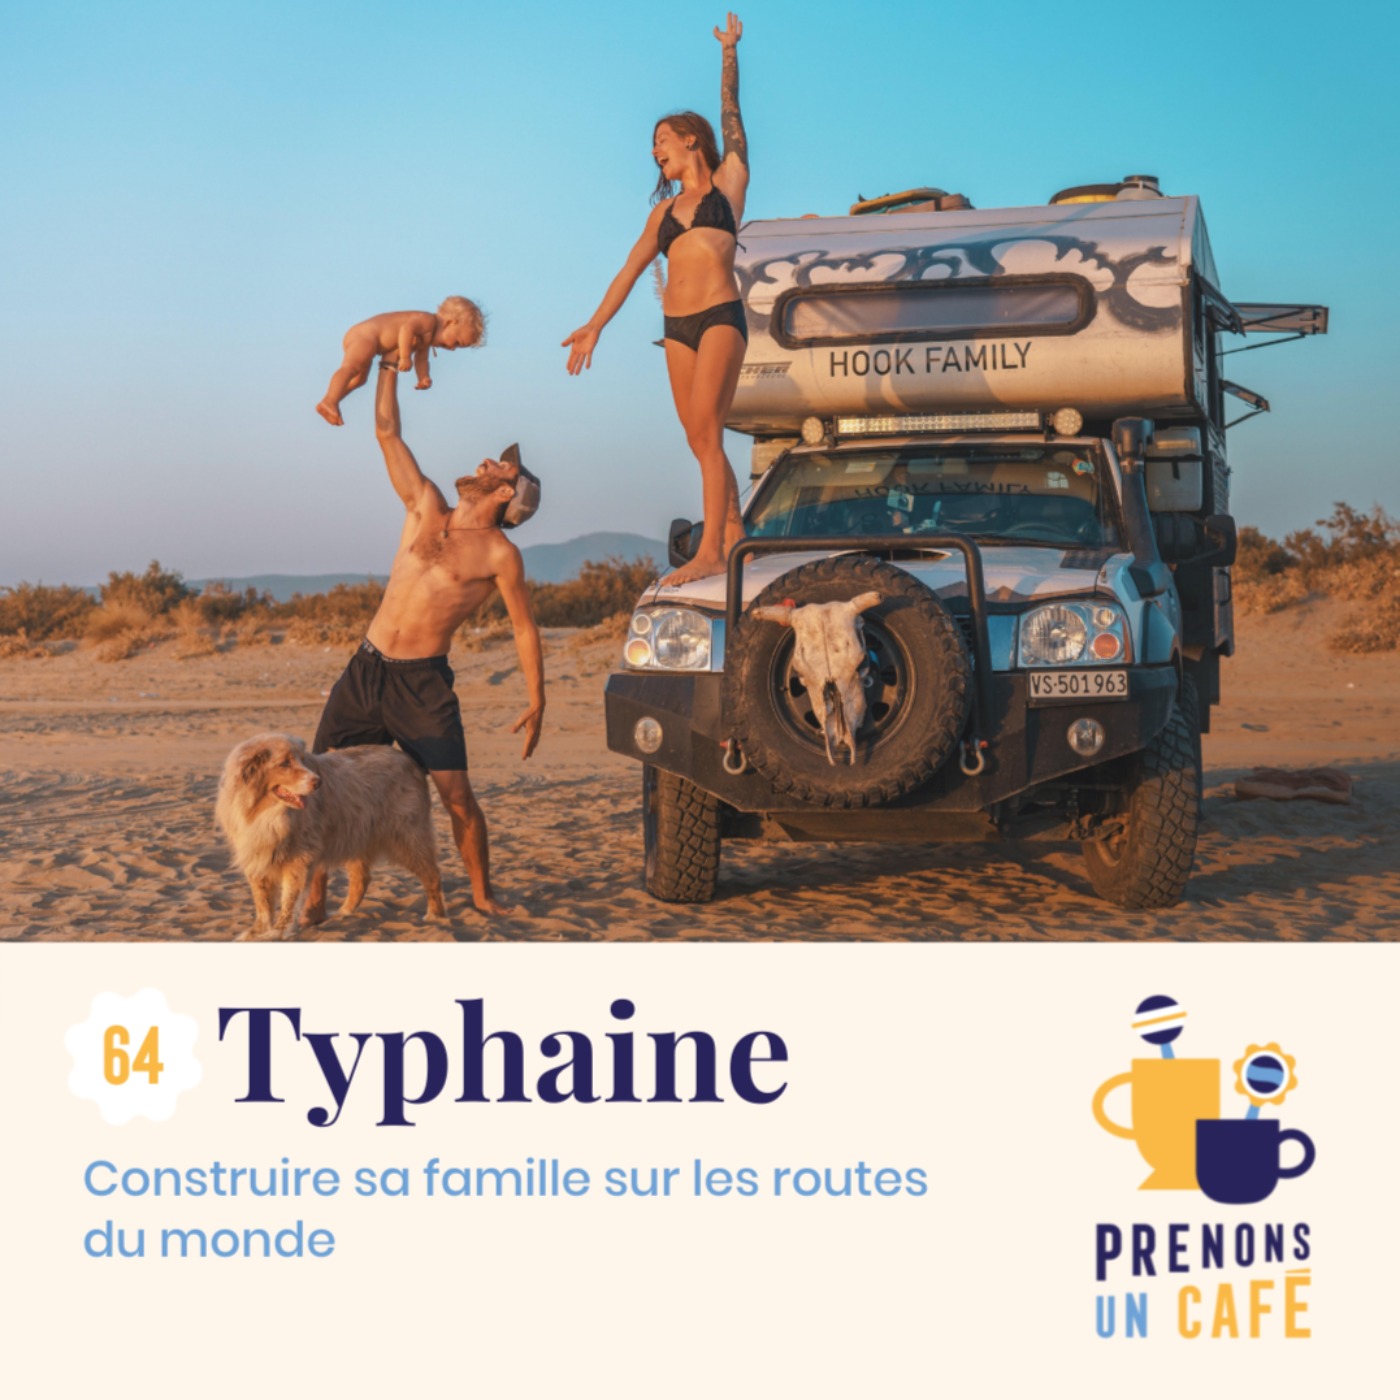 Typhaine - Construire sa famille sur les routes du monde